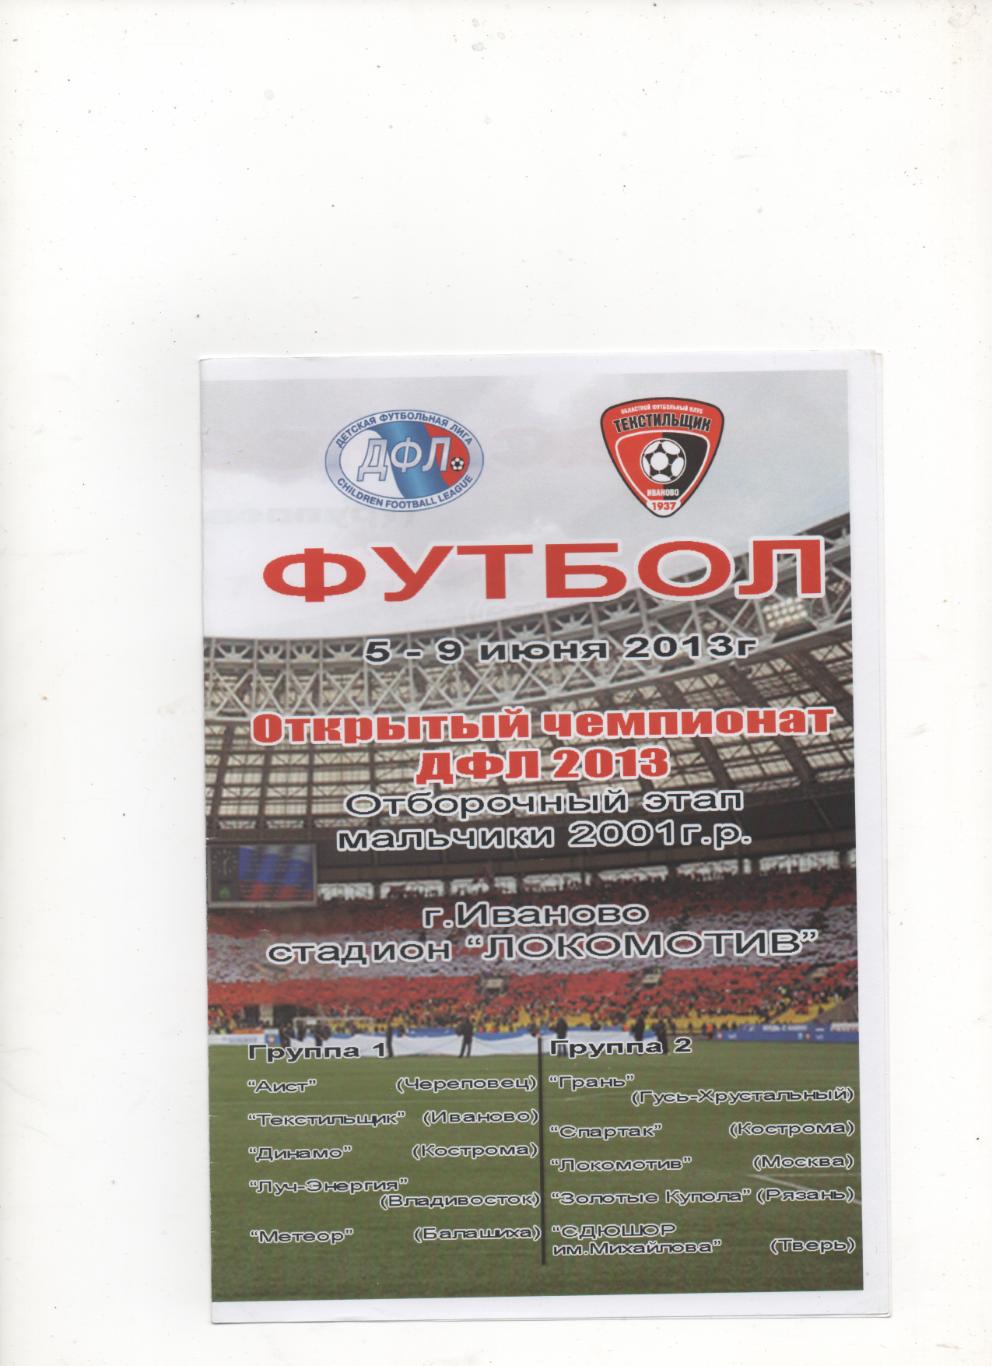 Открытый чемпионат ДФЛ, отборочный этап (2001 г.р). Иваново - 2013.